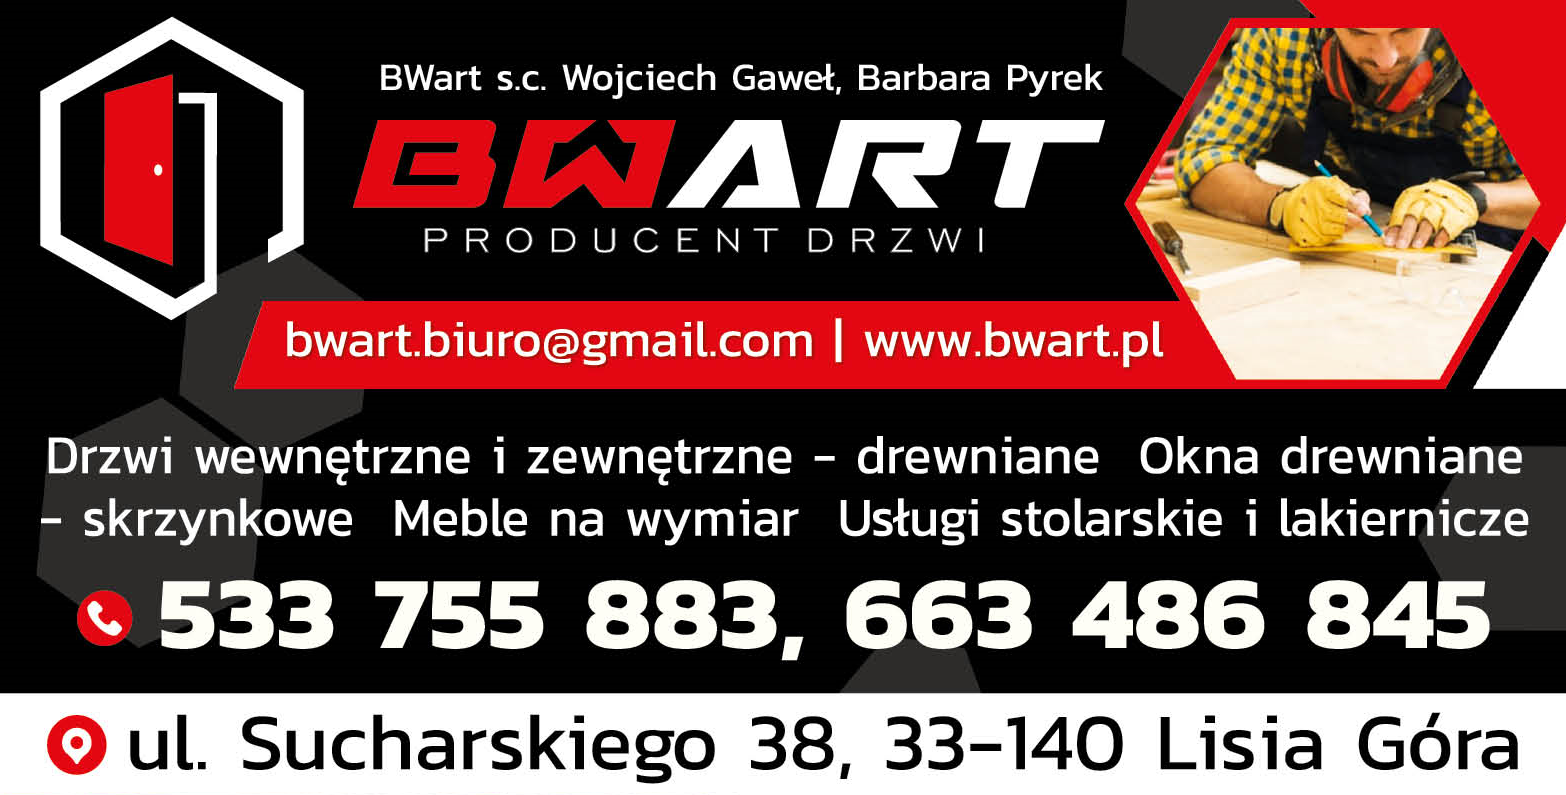 BWart s.c. Wojciech Gaweł, Barbara Pyrek Lisia Góra Drzwi / Okna / Meble Na Wymiar / Usł. Stolarskie